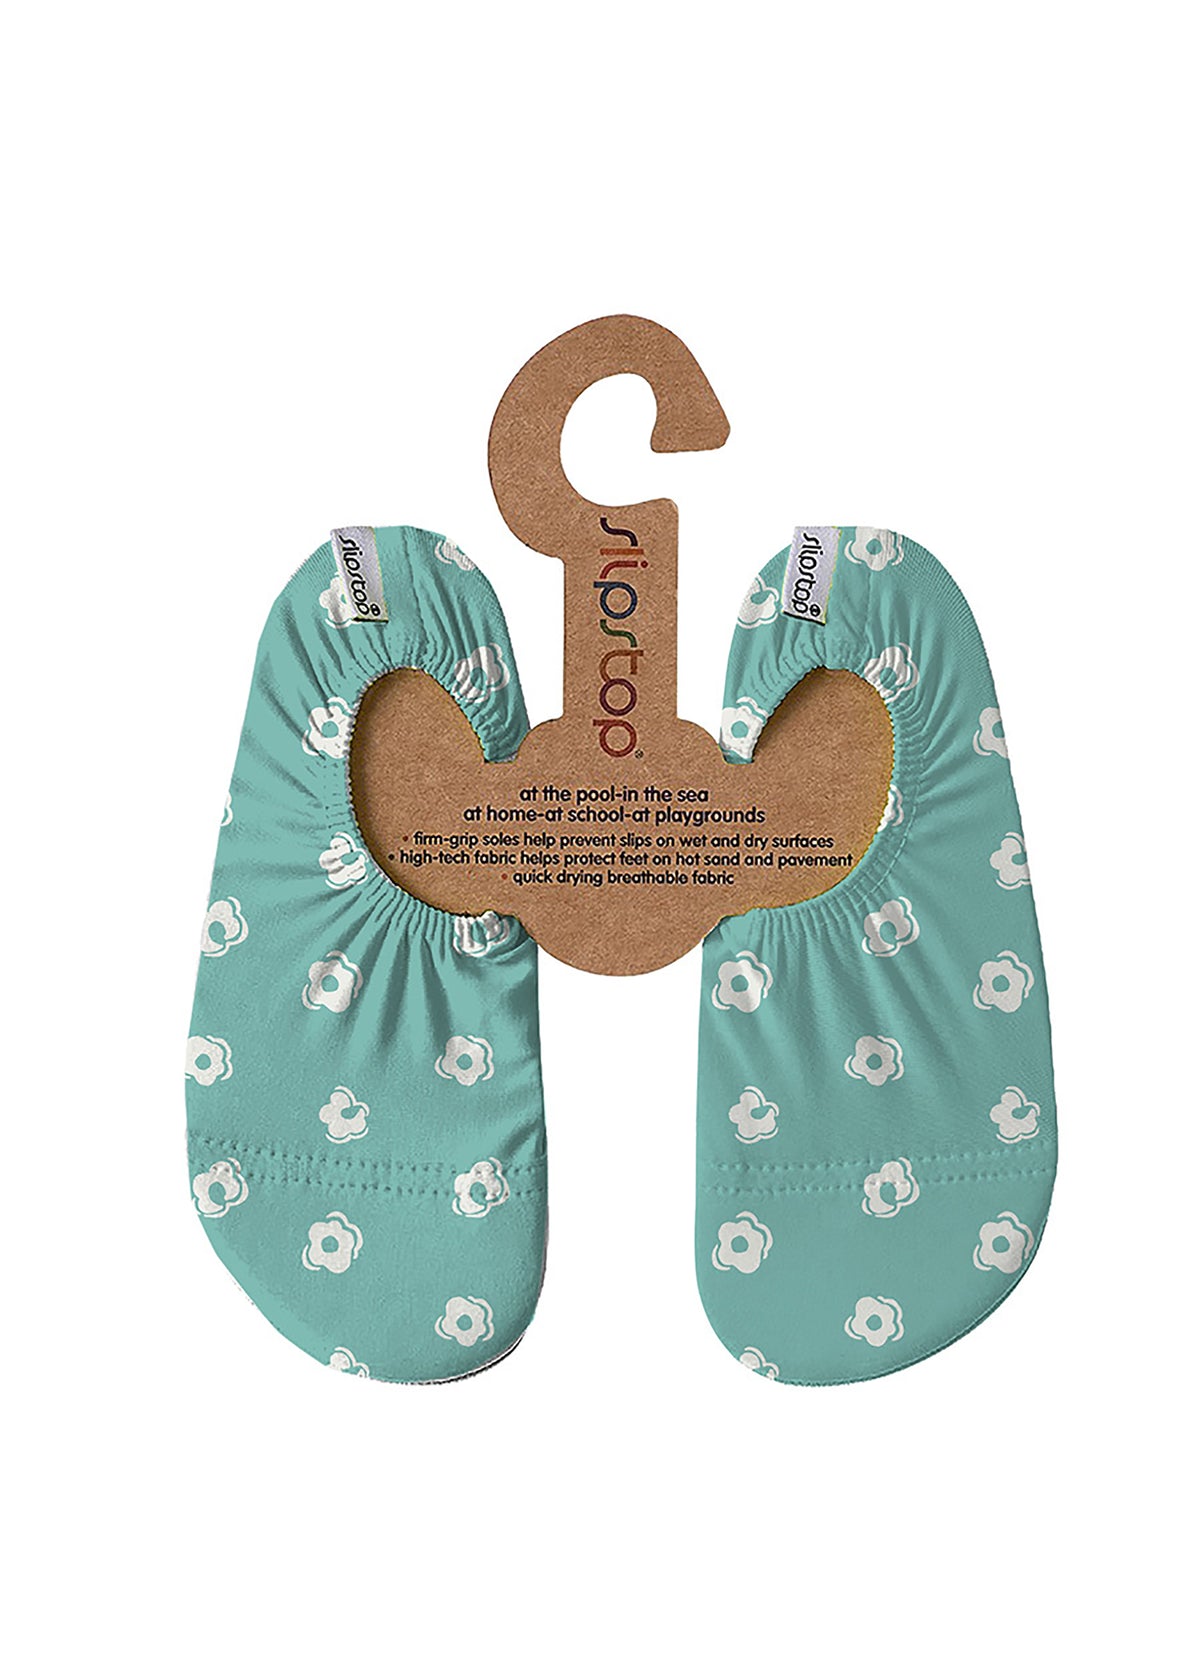 Children's slippers - Margarita, flower, turquoise